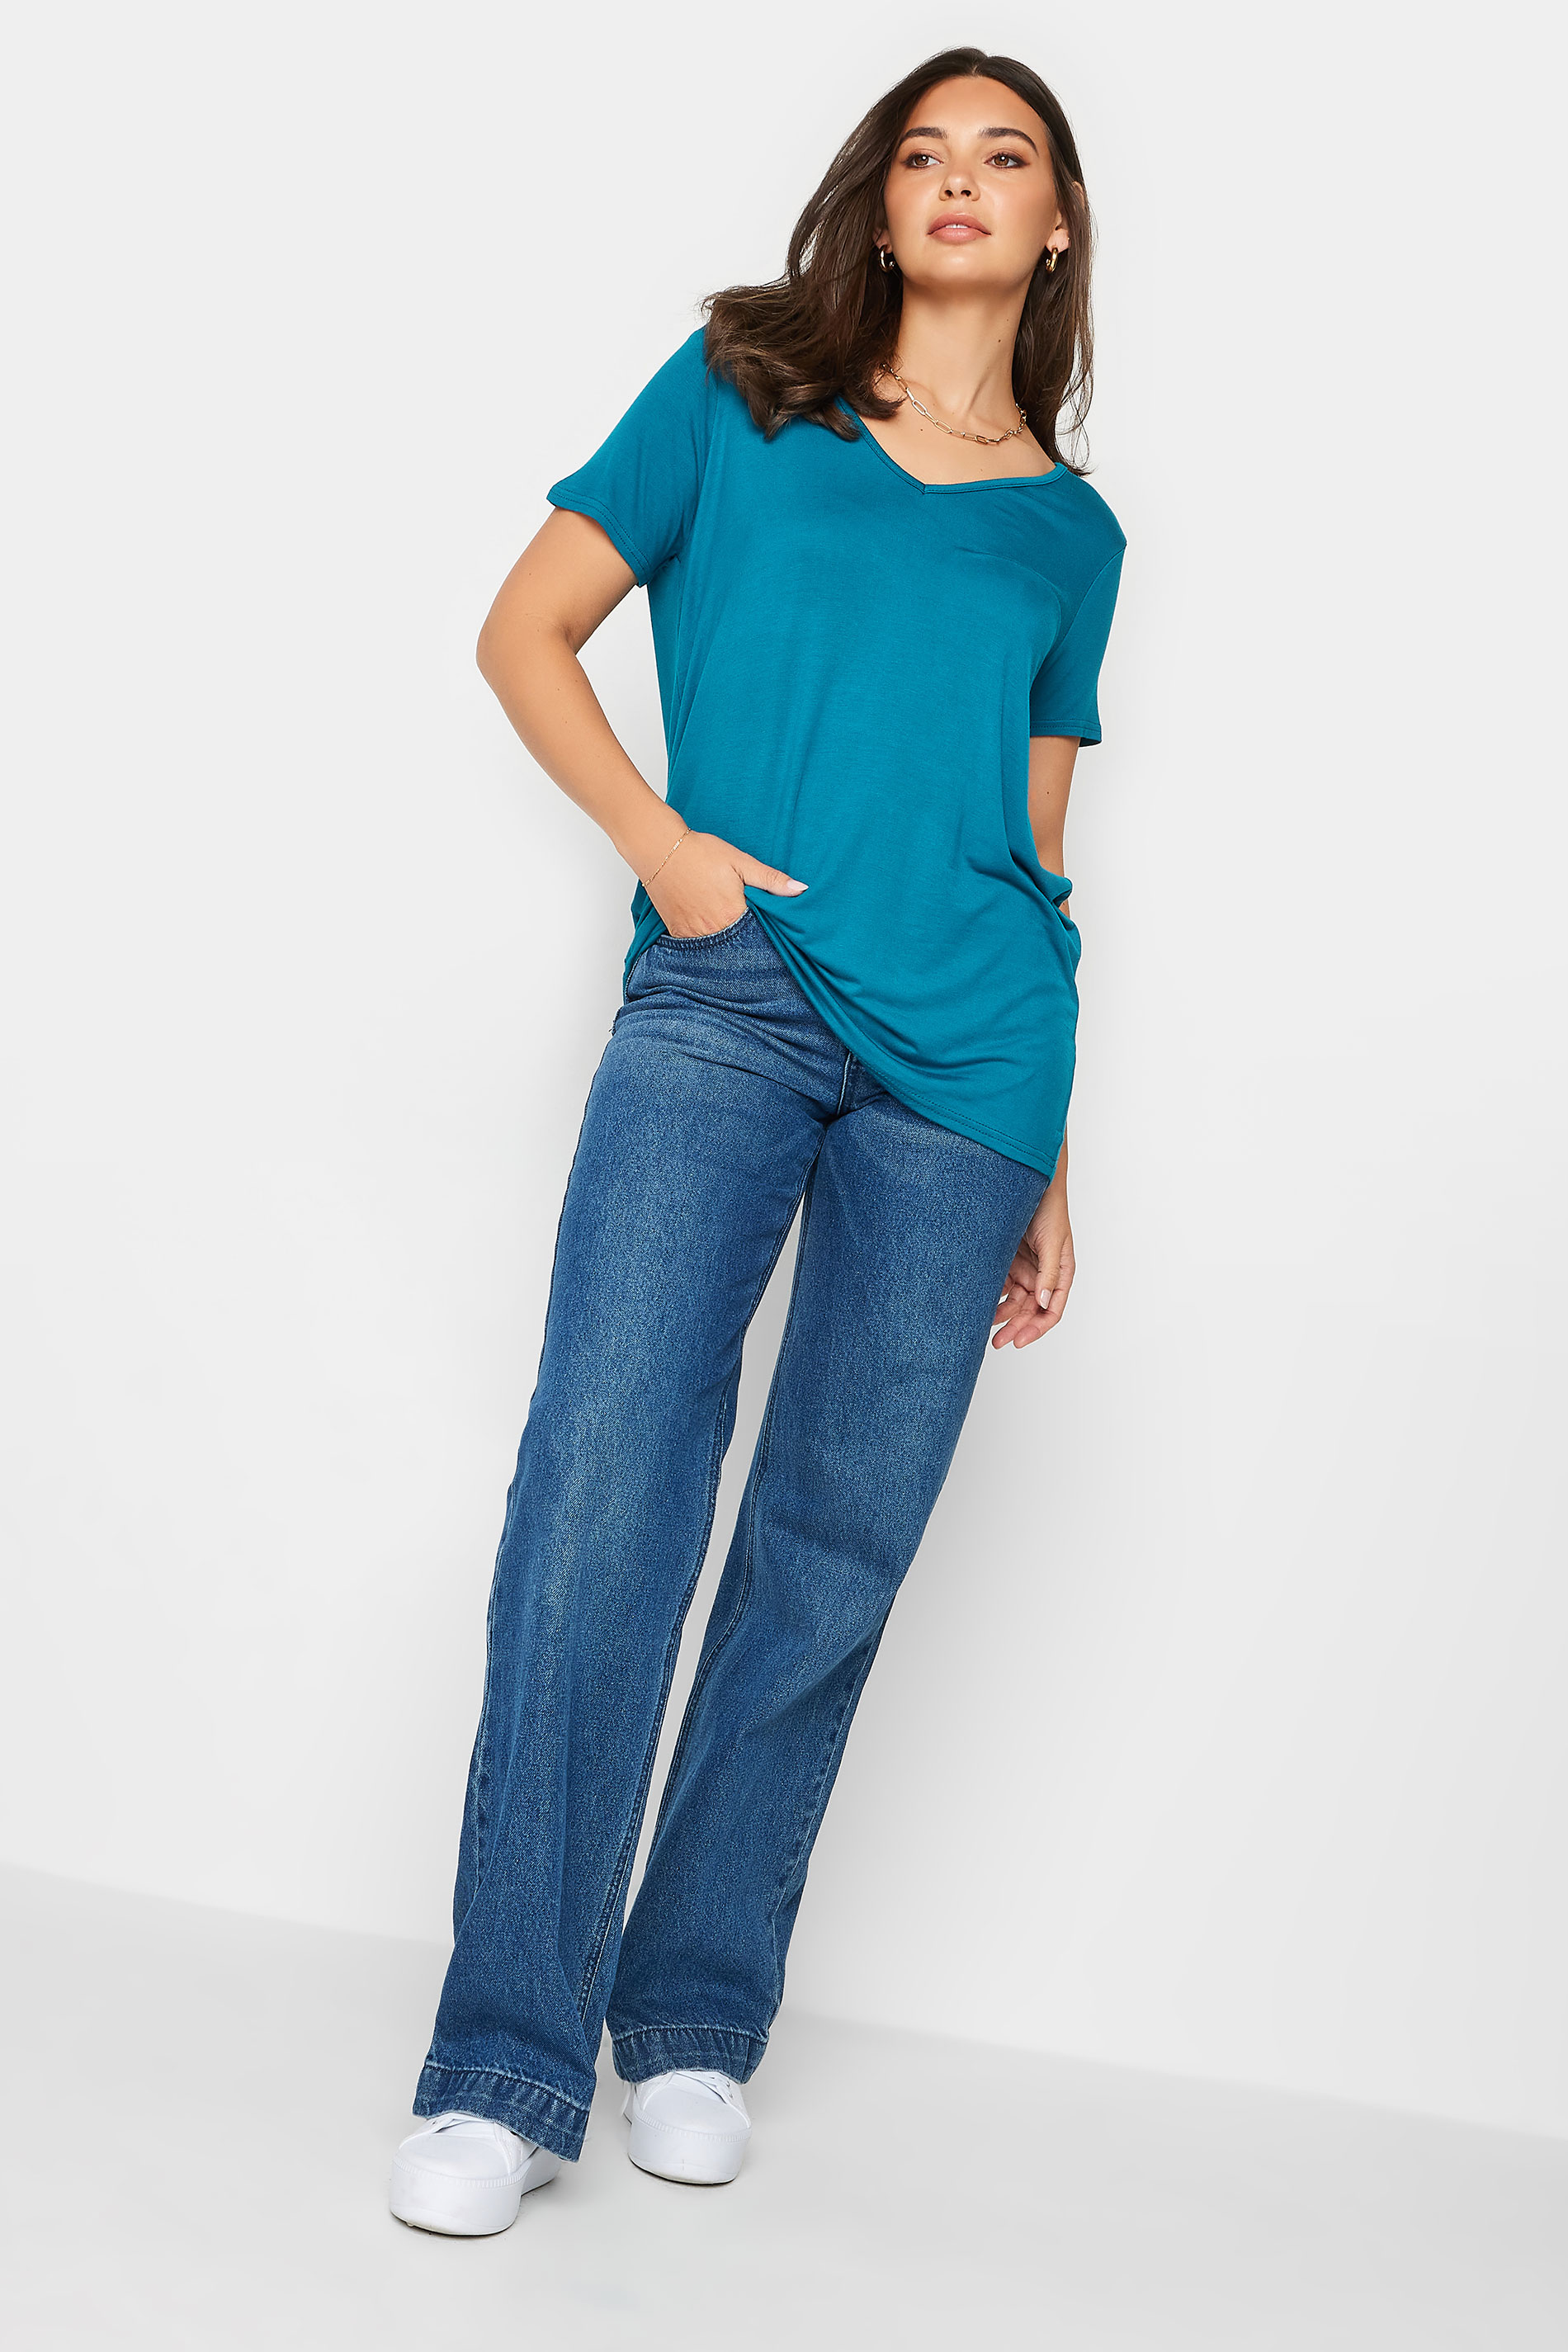 LTS Tall Women's Teal Blue V-Neck T-Shirt | Long Tall Sally 2